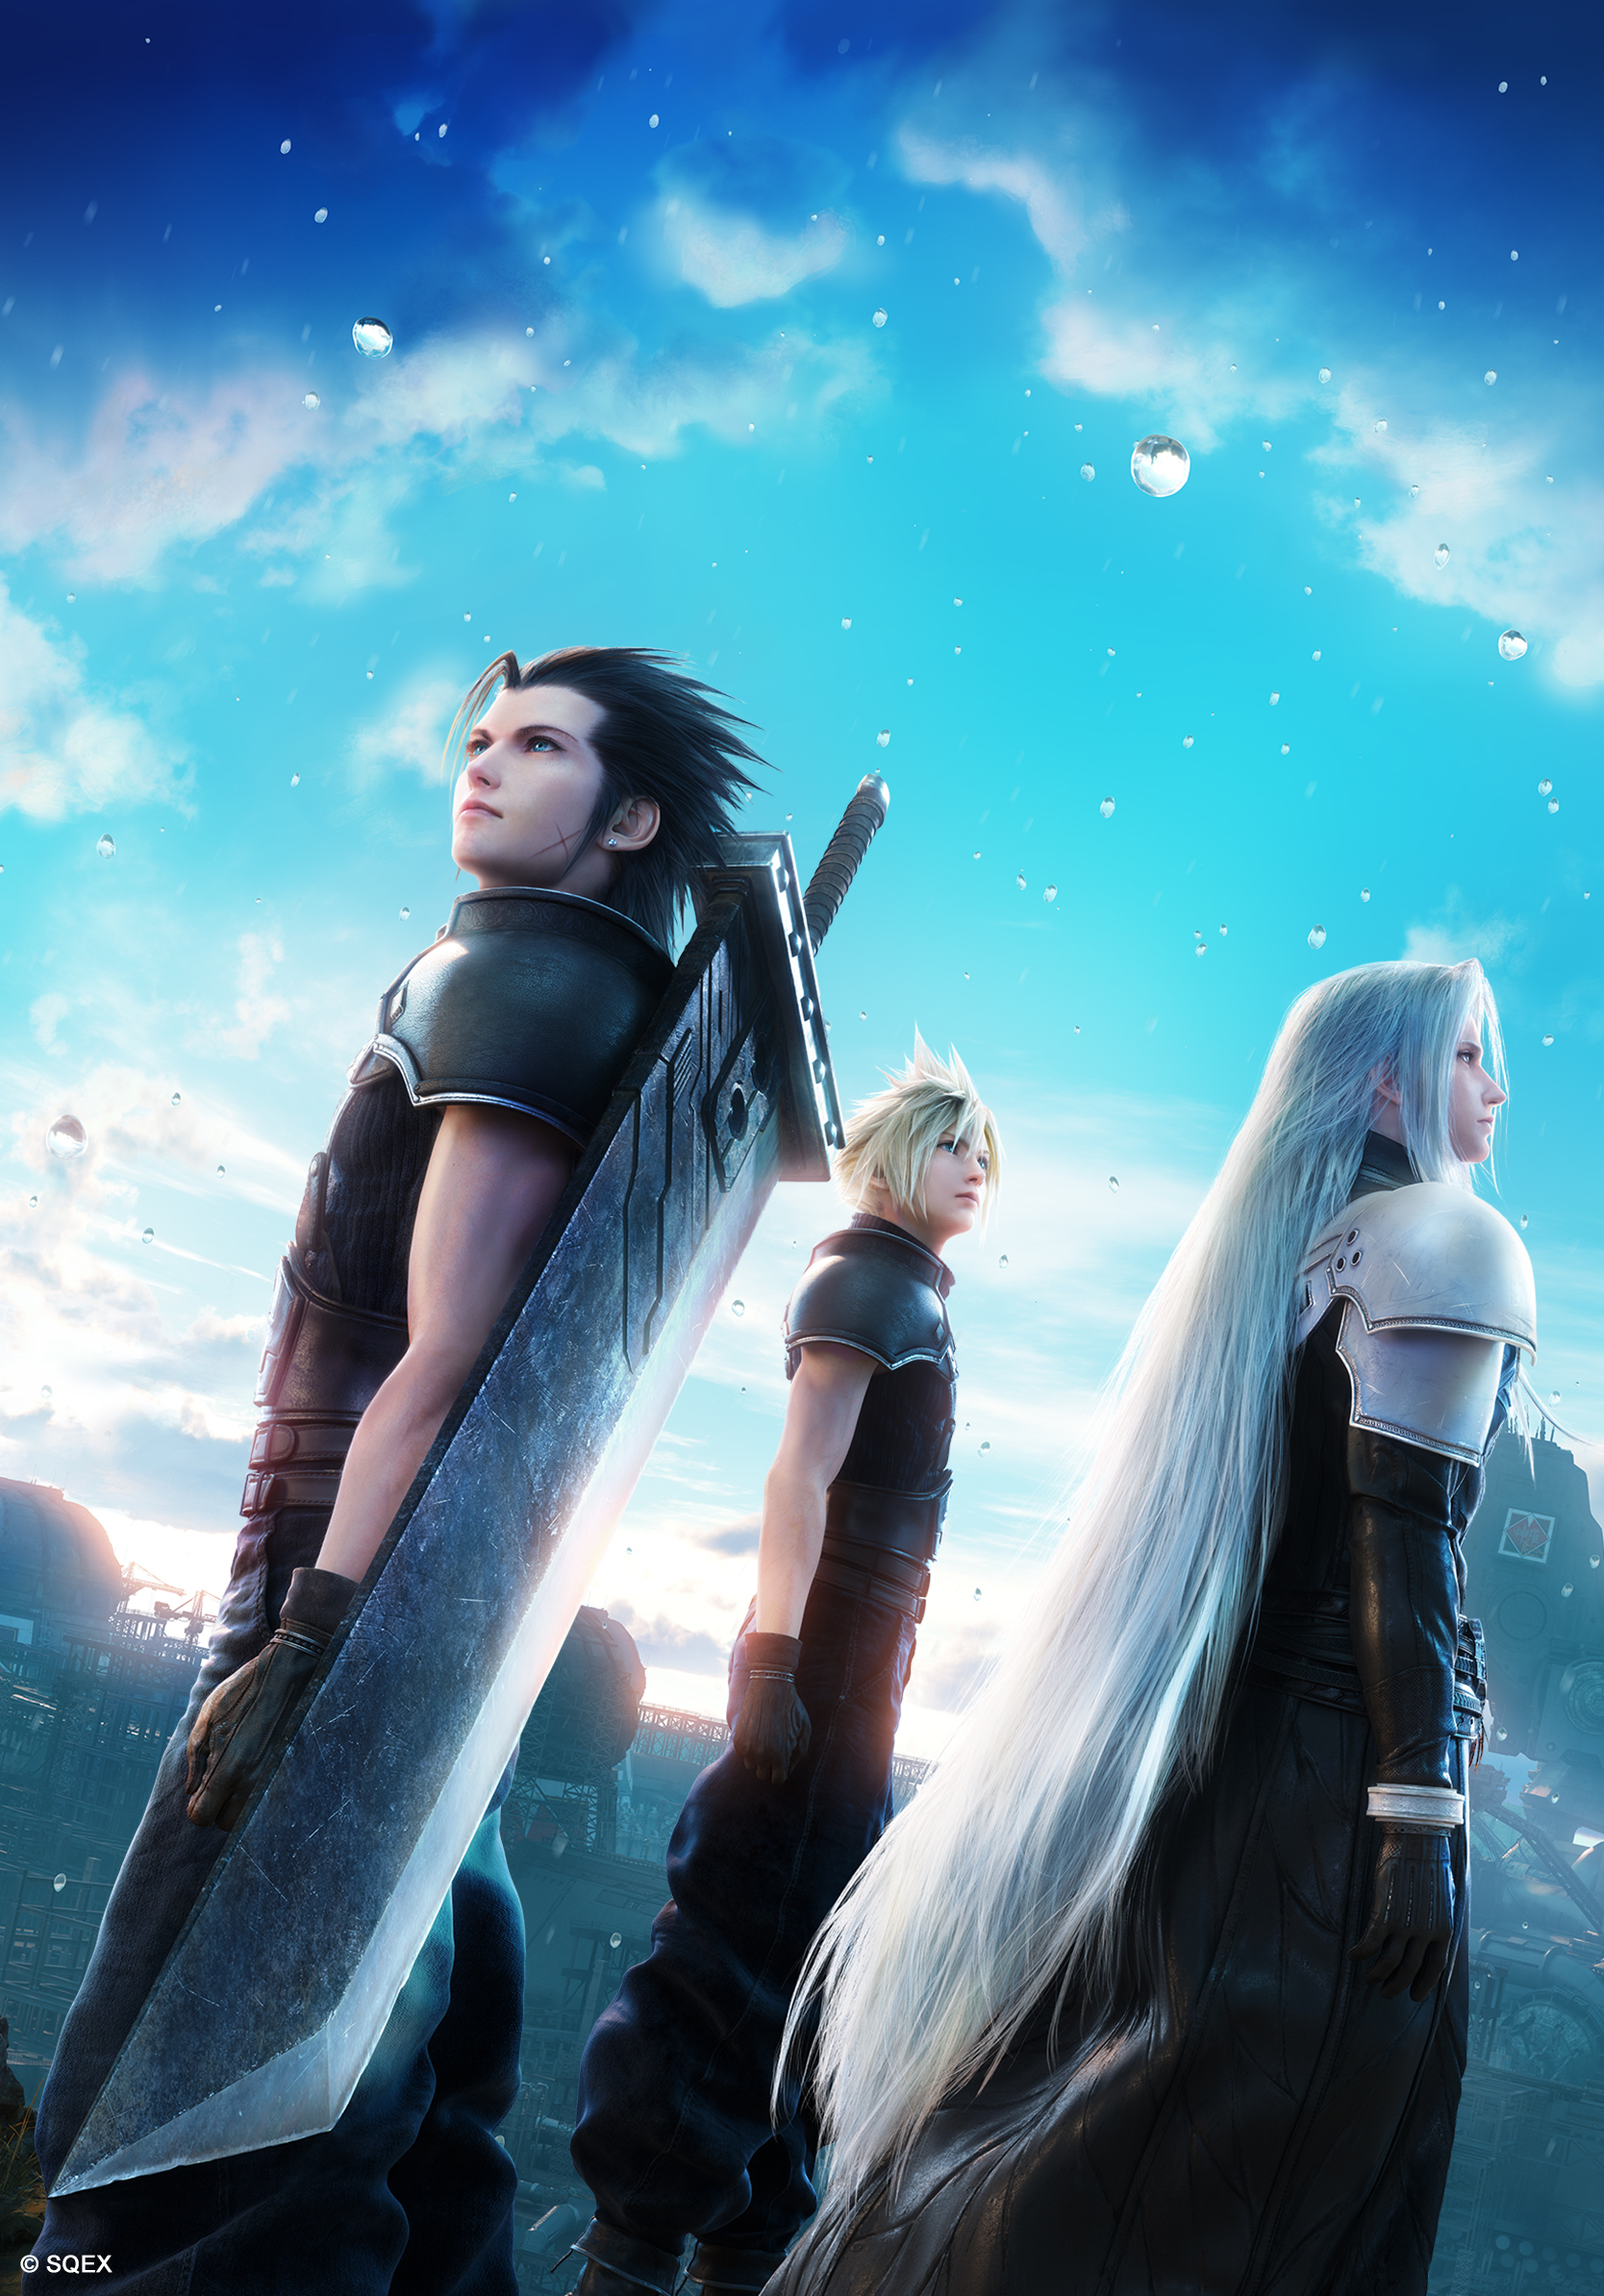 Square Enix annuncia Crisis Core: Final Fantasy VII Reunion